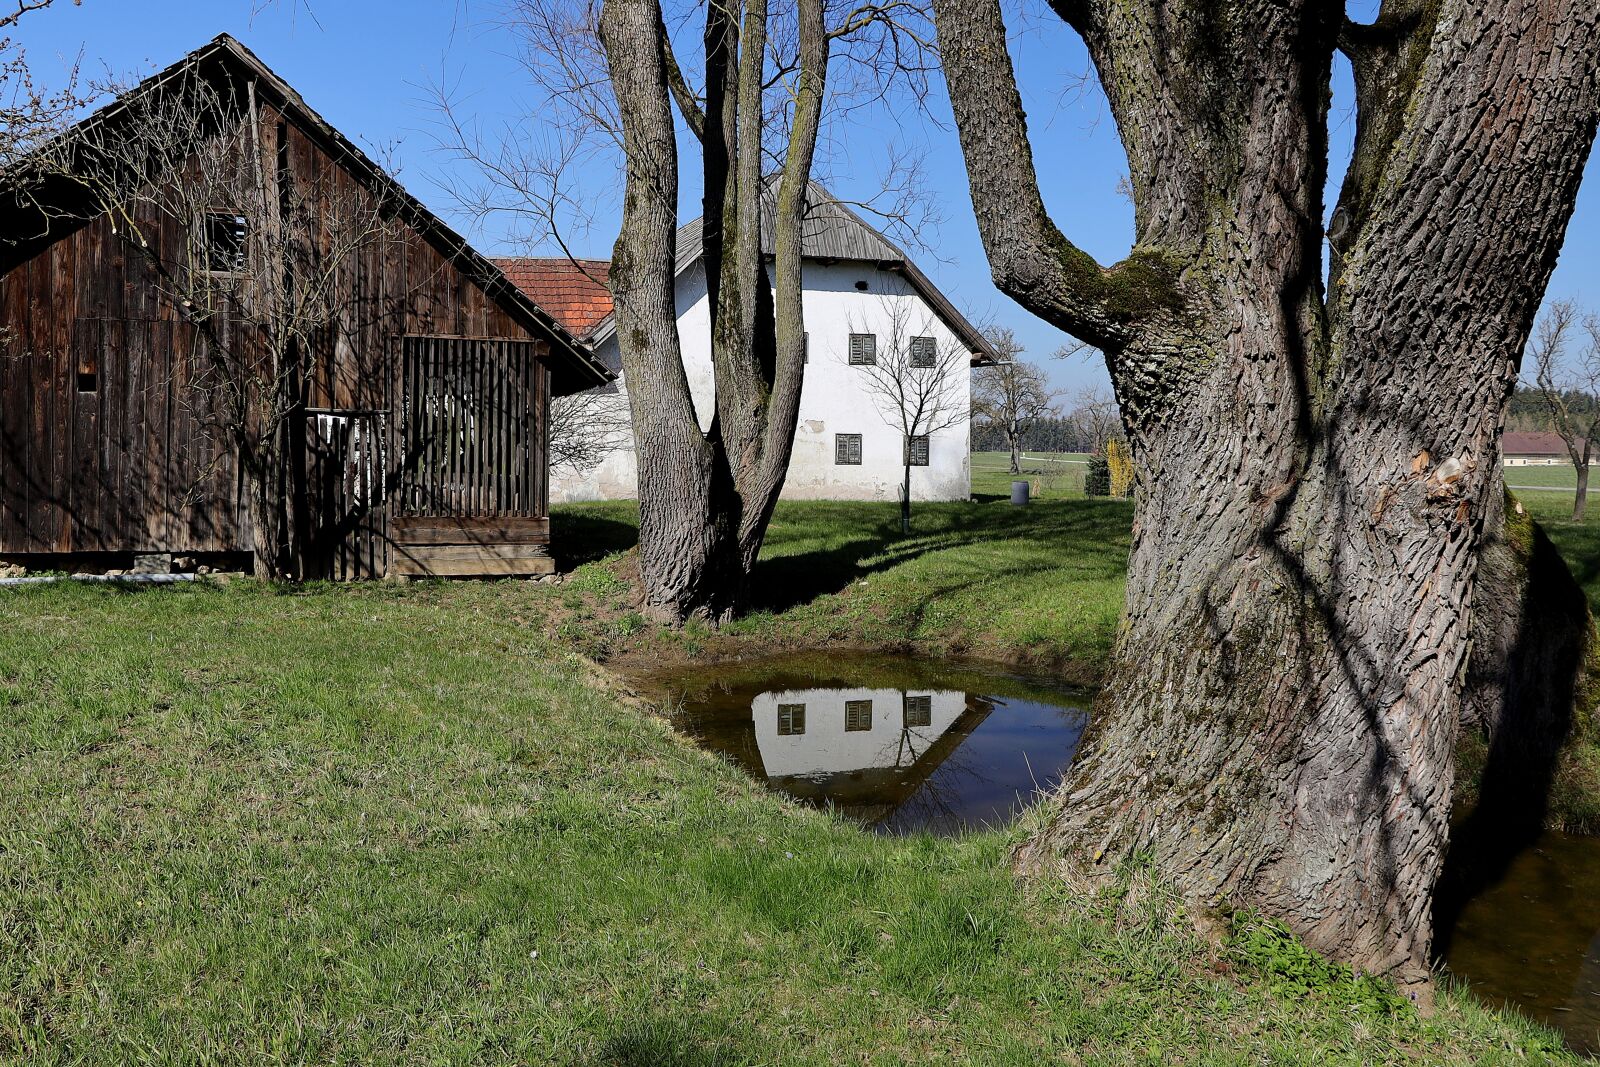 Canon EOS R sample photo. Farmhouse, barn, mirroring photography